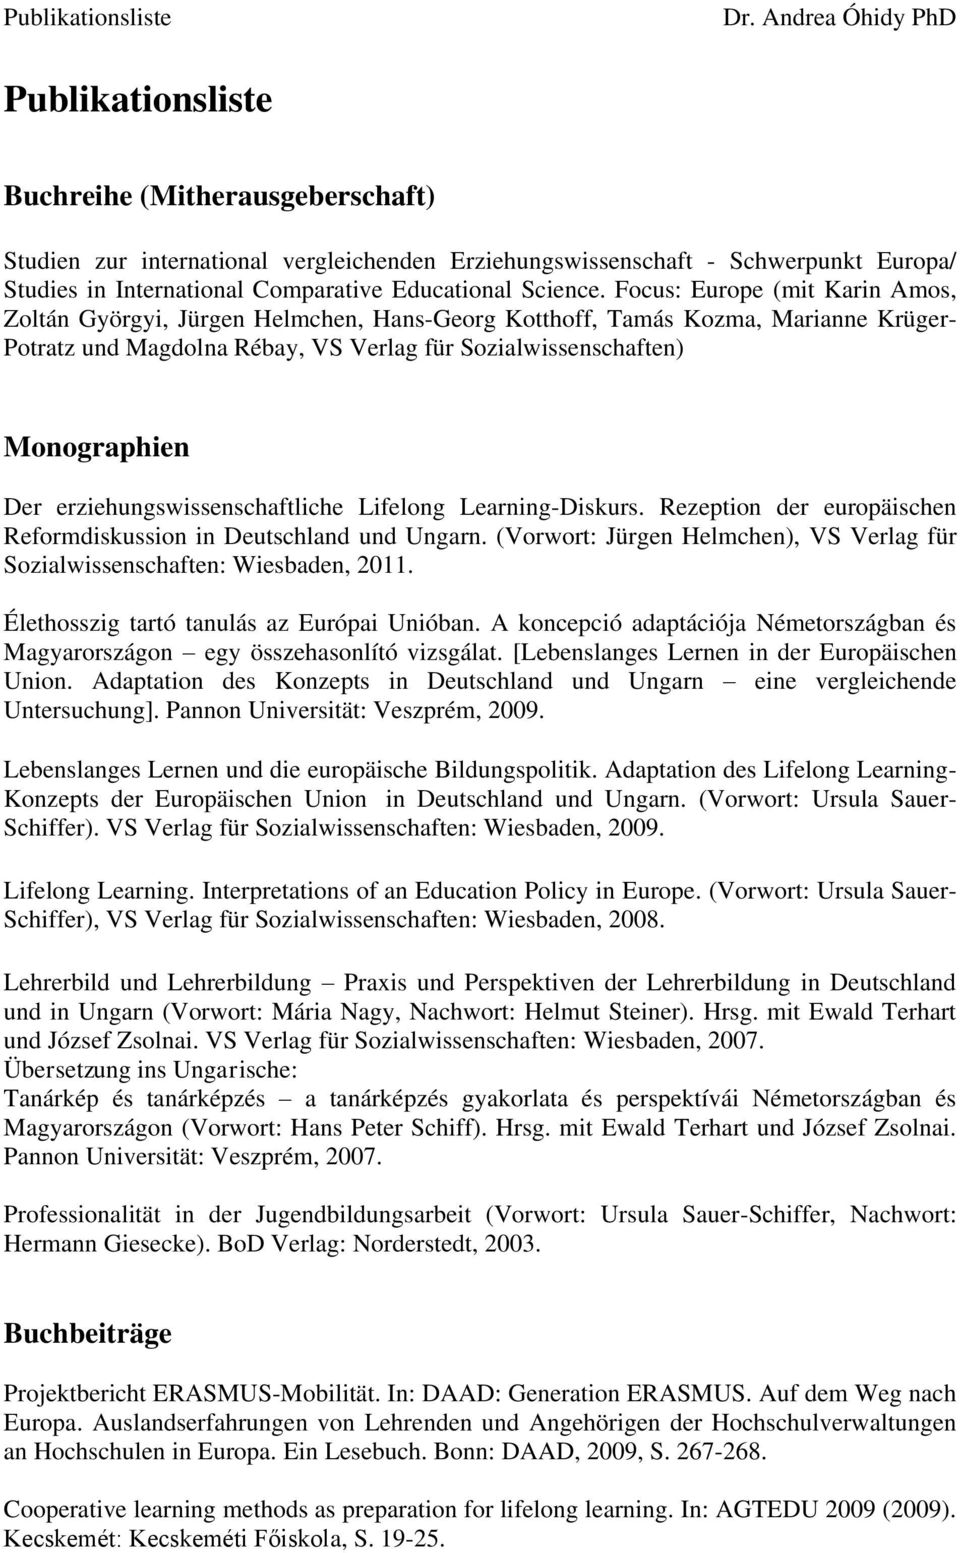 erziehungswissenschaftliche Lifelong Learning-Diskurs. Rezeption der europäischen Reformdiskussion in Deutschland und Ungarn.